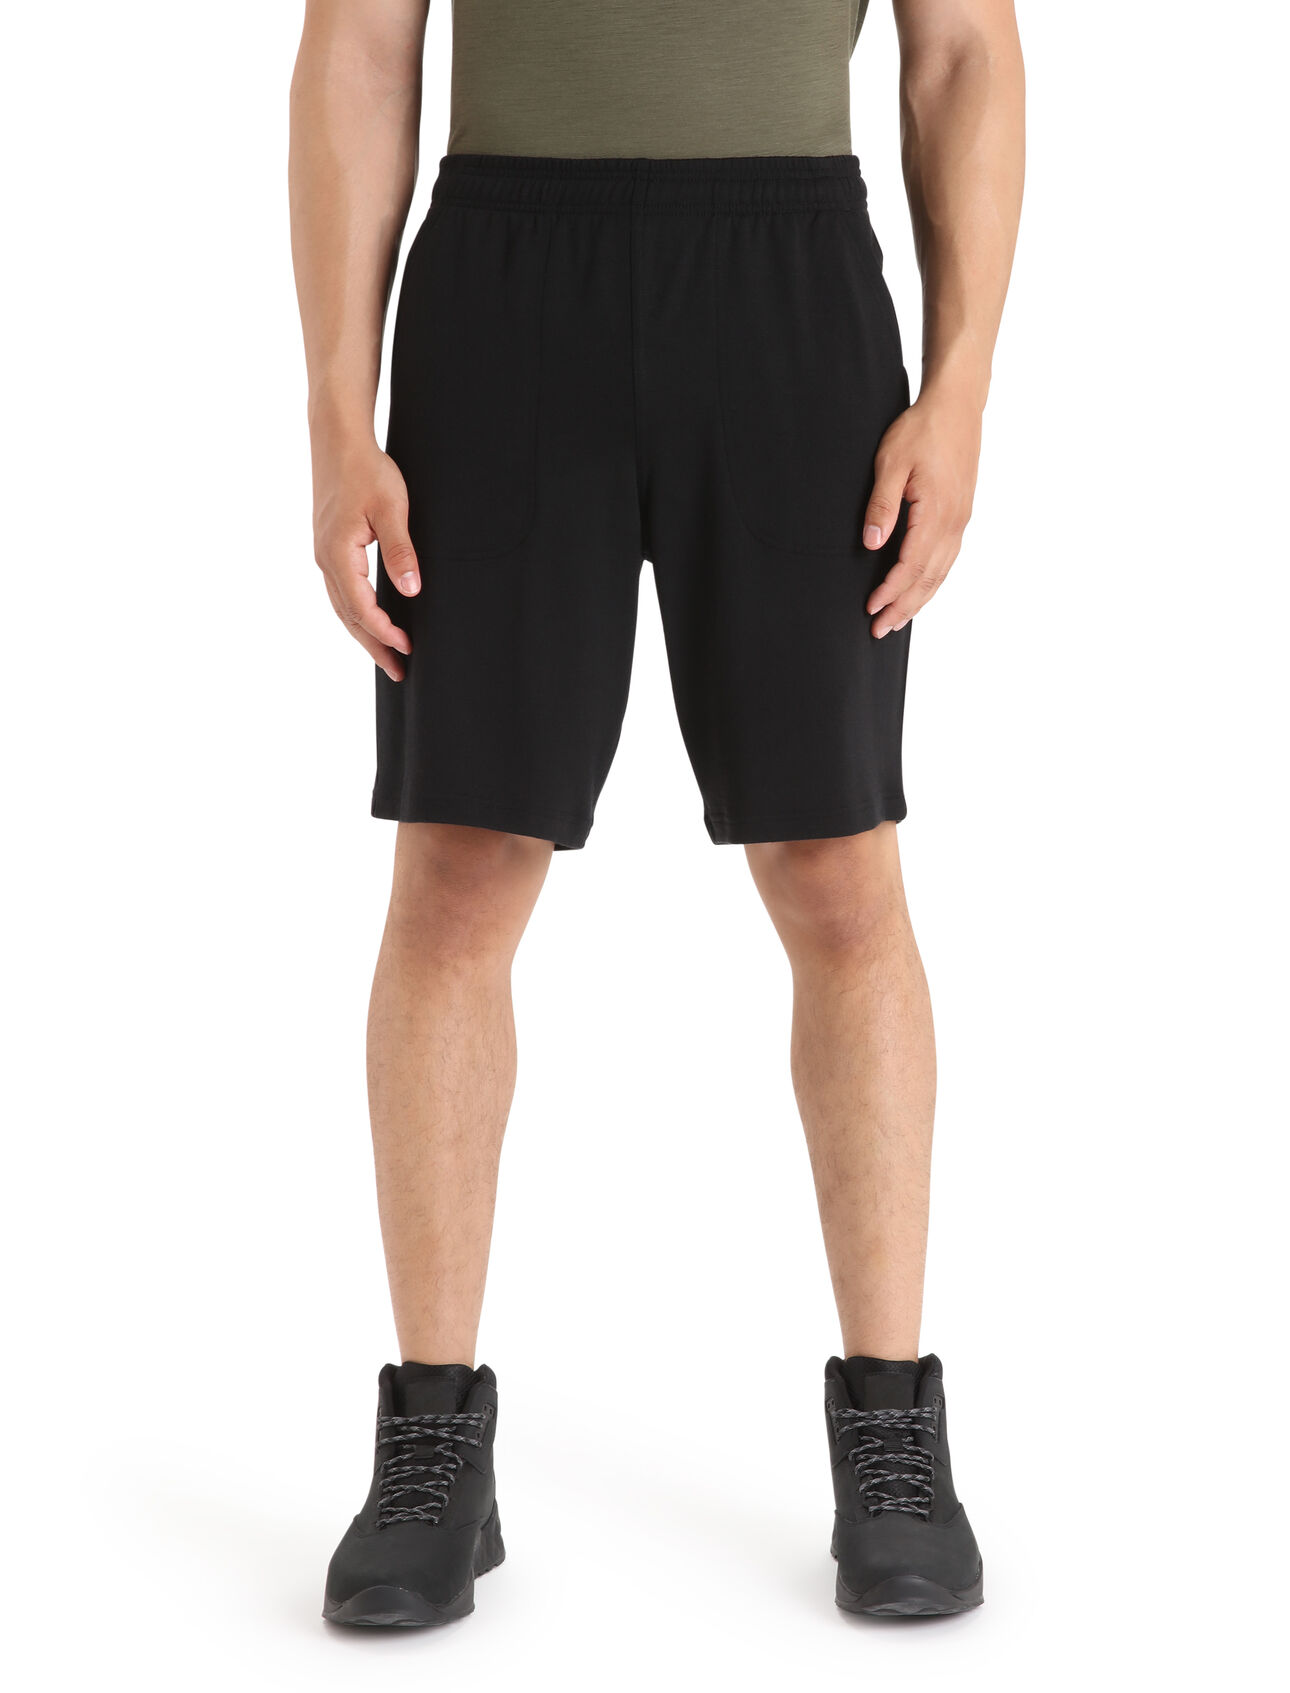 para hombre Shorts Merino Shifter  Los shorts Shifter son unos pantalones cortos deportivos clásicos con un toque moderno, ya que están elaborados con tejido de rizo de suave 100 % lana merina. Un diseño moderno para ir vestir con comodidad a diario. 